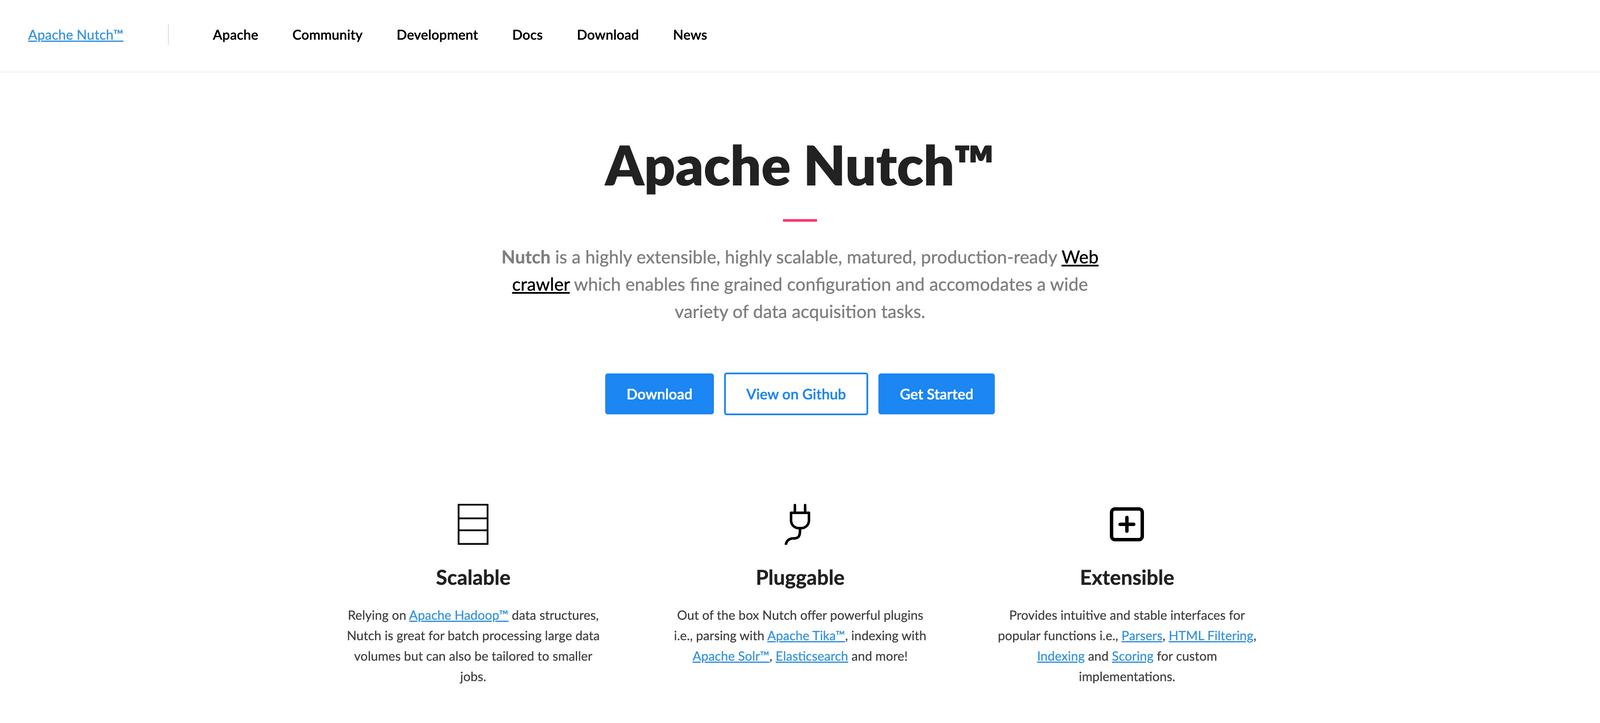 Apache Nutch™ 